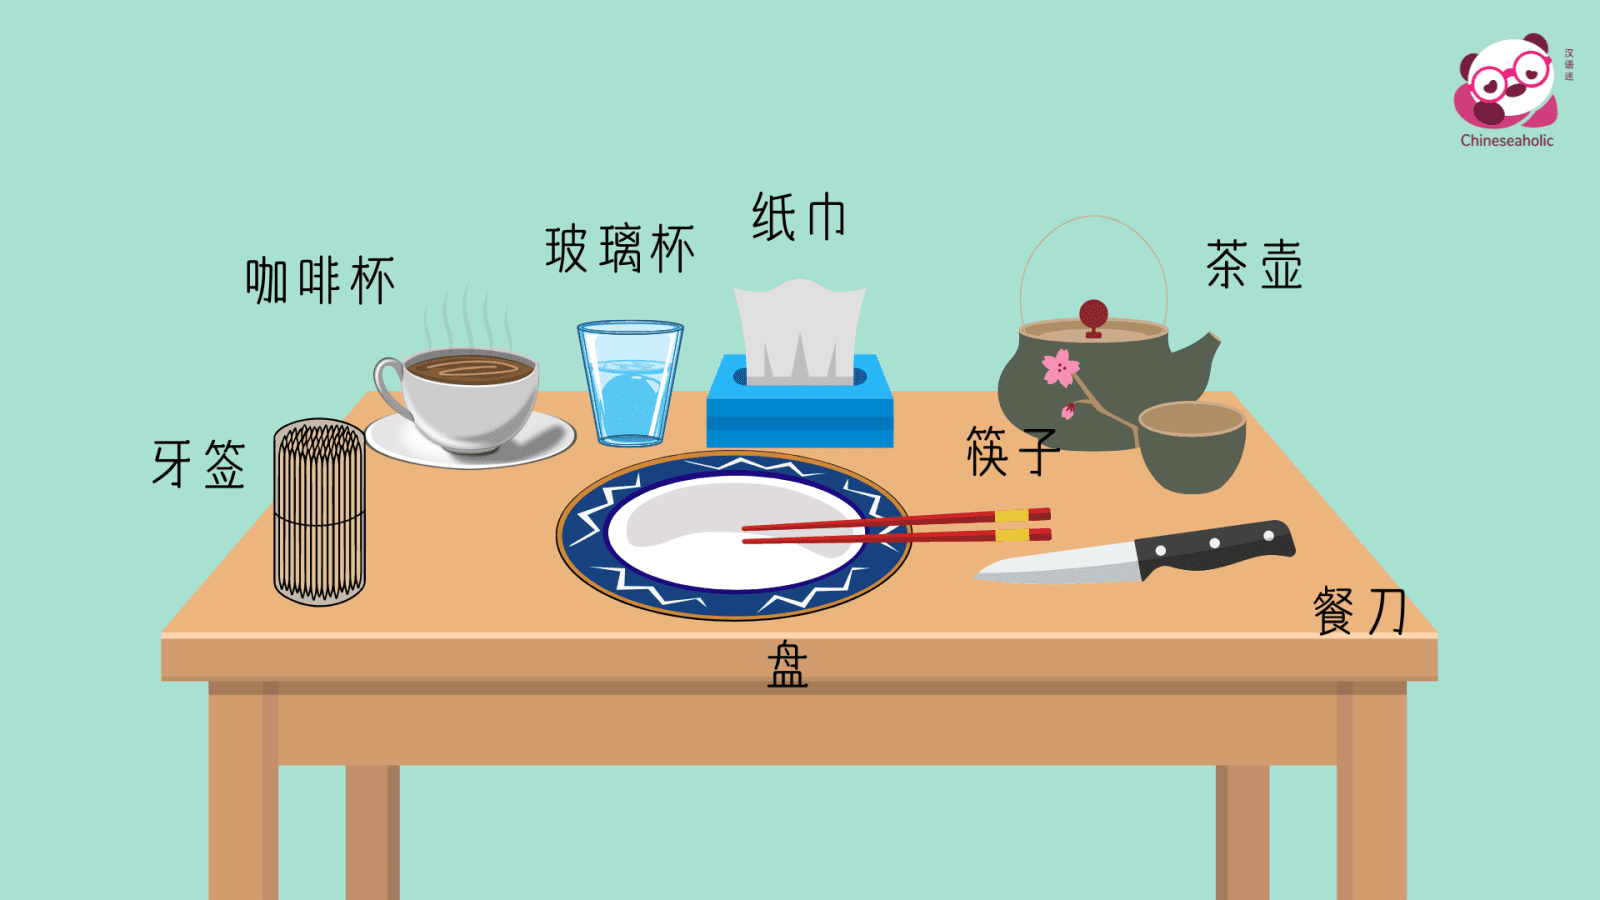 แบบทดสอบคำศัพท์ภาษาจีน อุปกรณ์ทานอาหาร